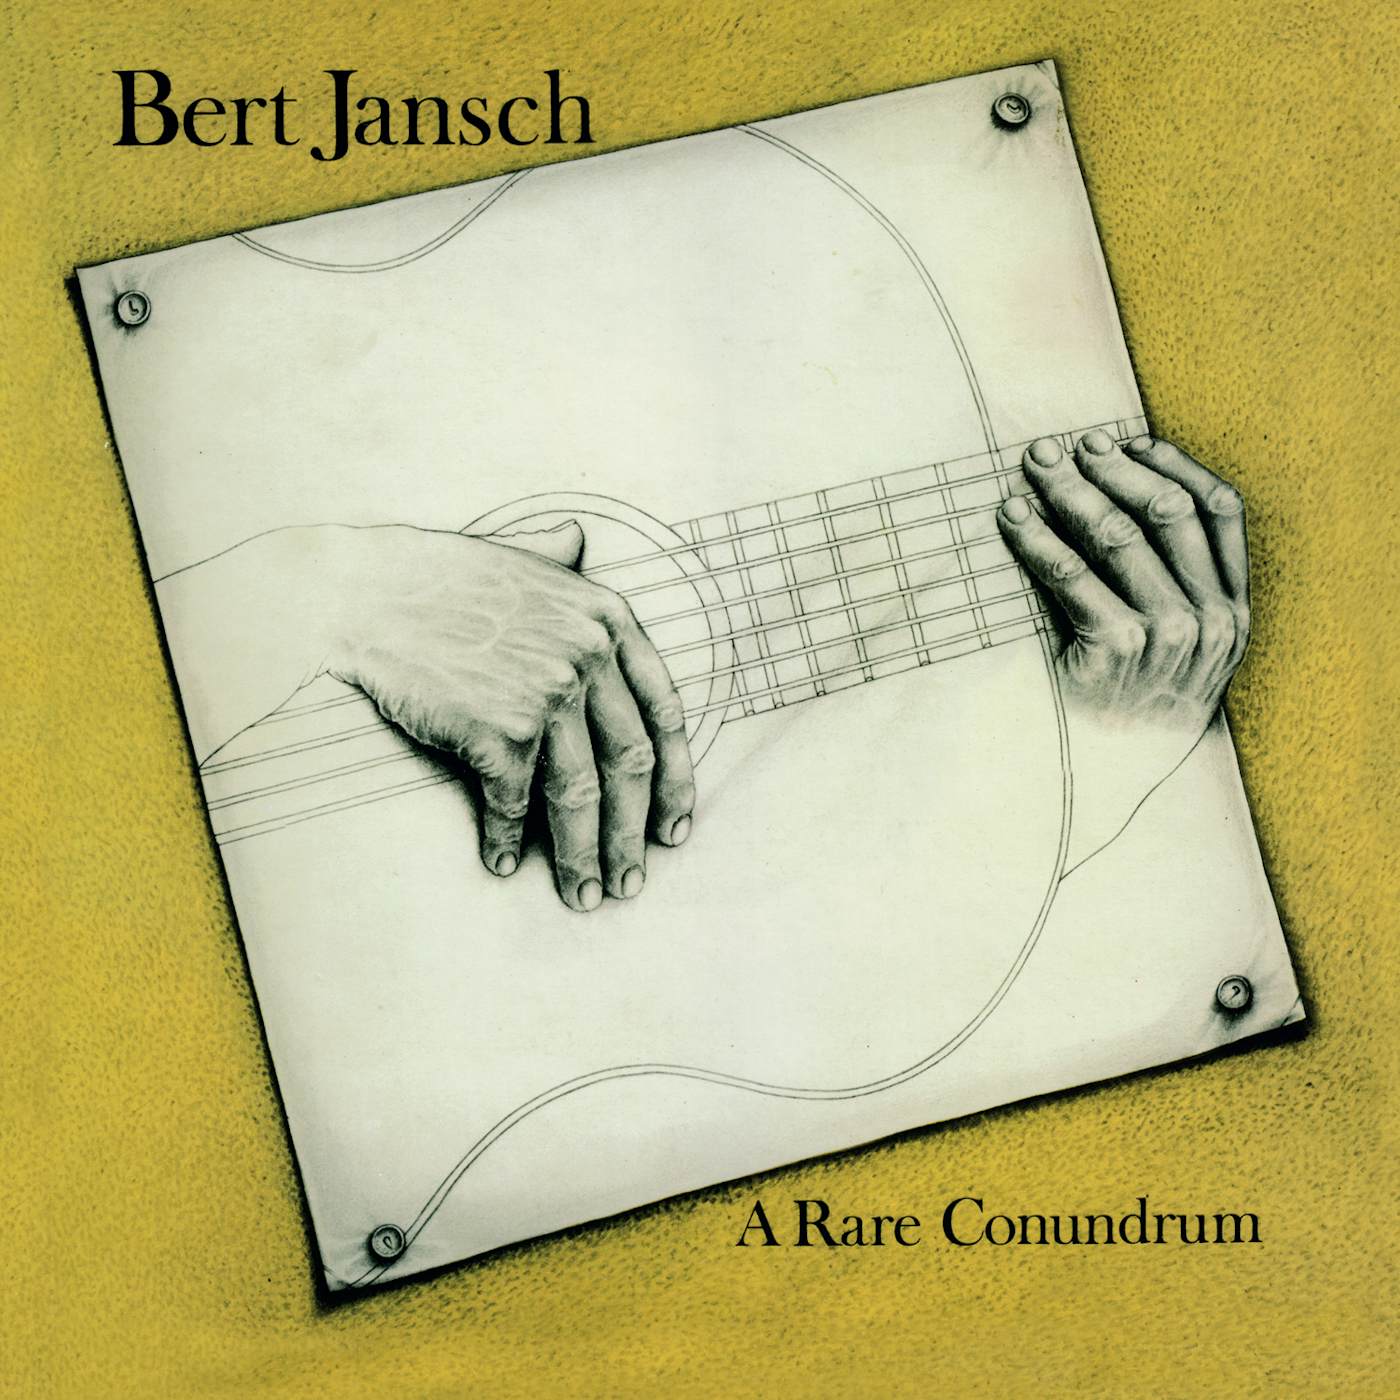 Bert Jansch A Rare Conundrum Vinyl Record